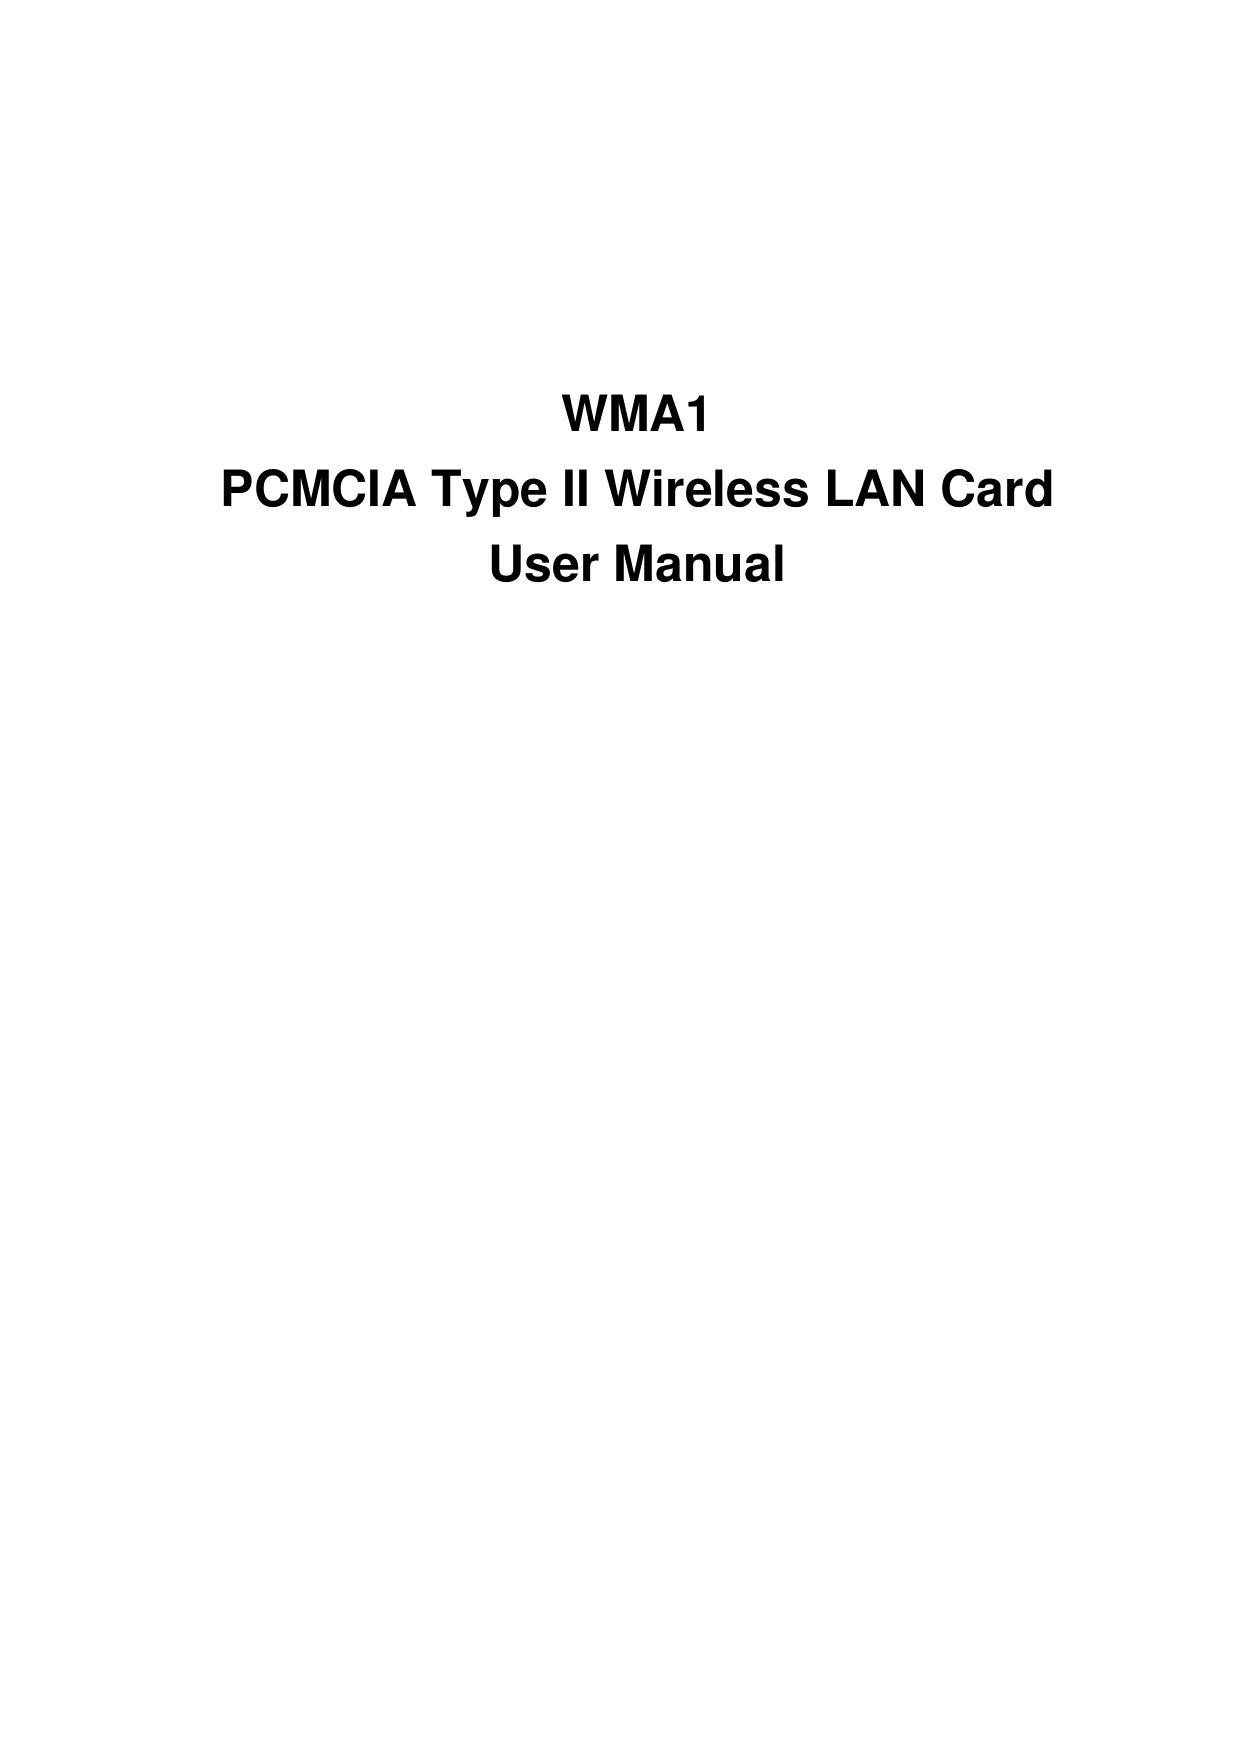 WMA1PCMCIA Type II Wireless LAN CardUser Manual  